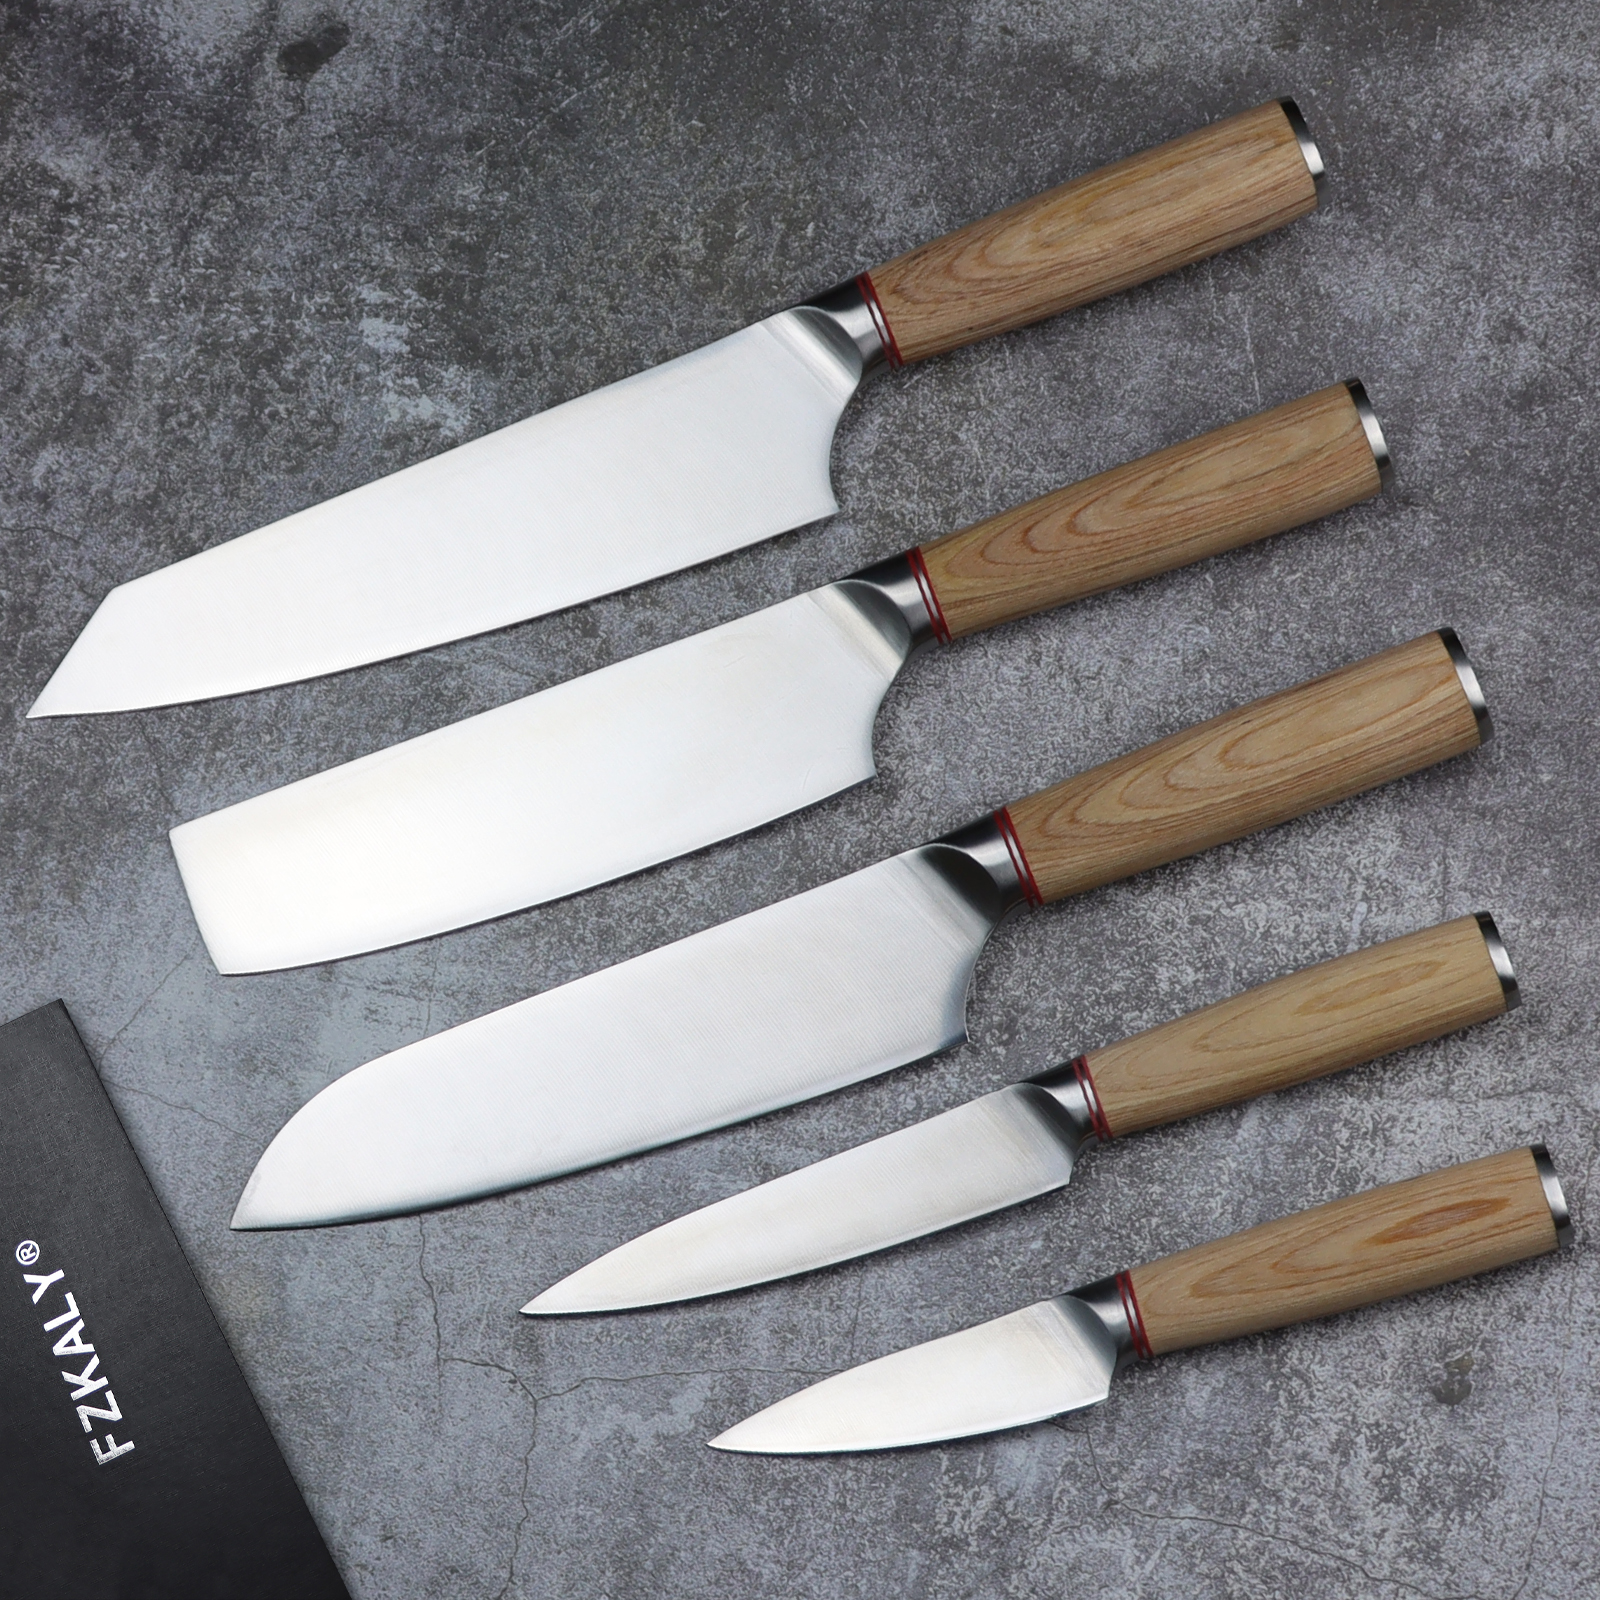 Fzkaly 5 Piece Chef Knife Set